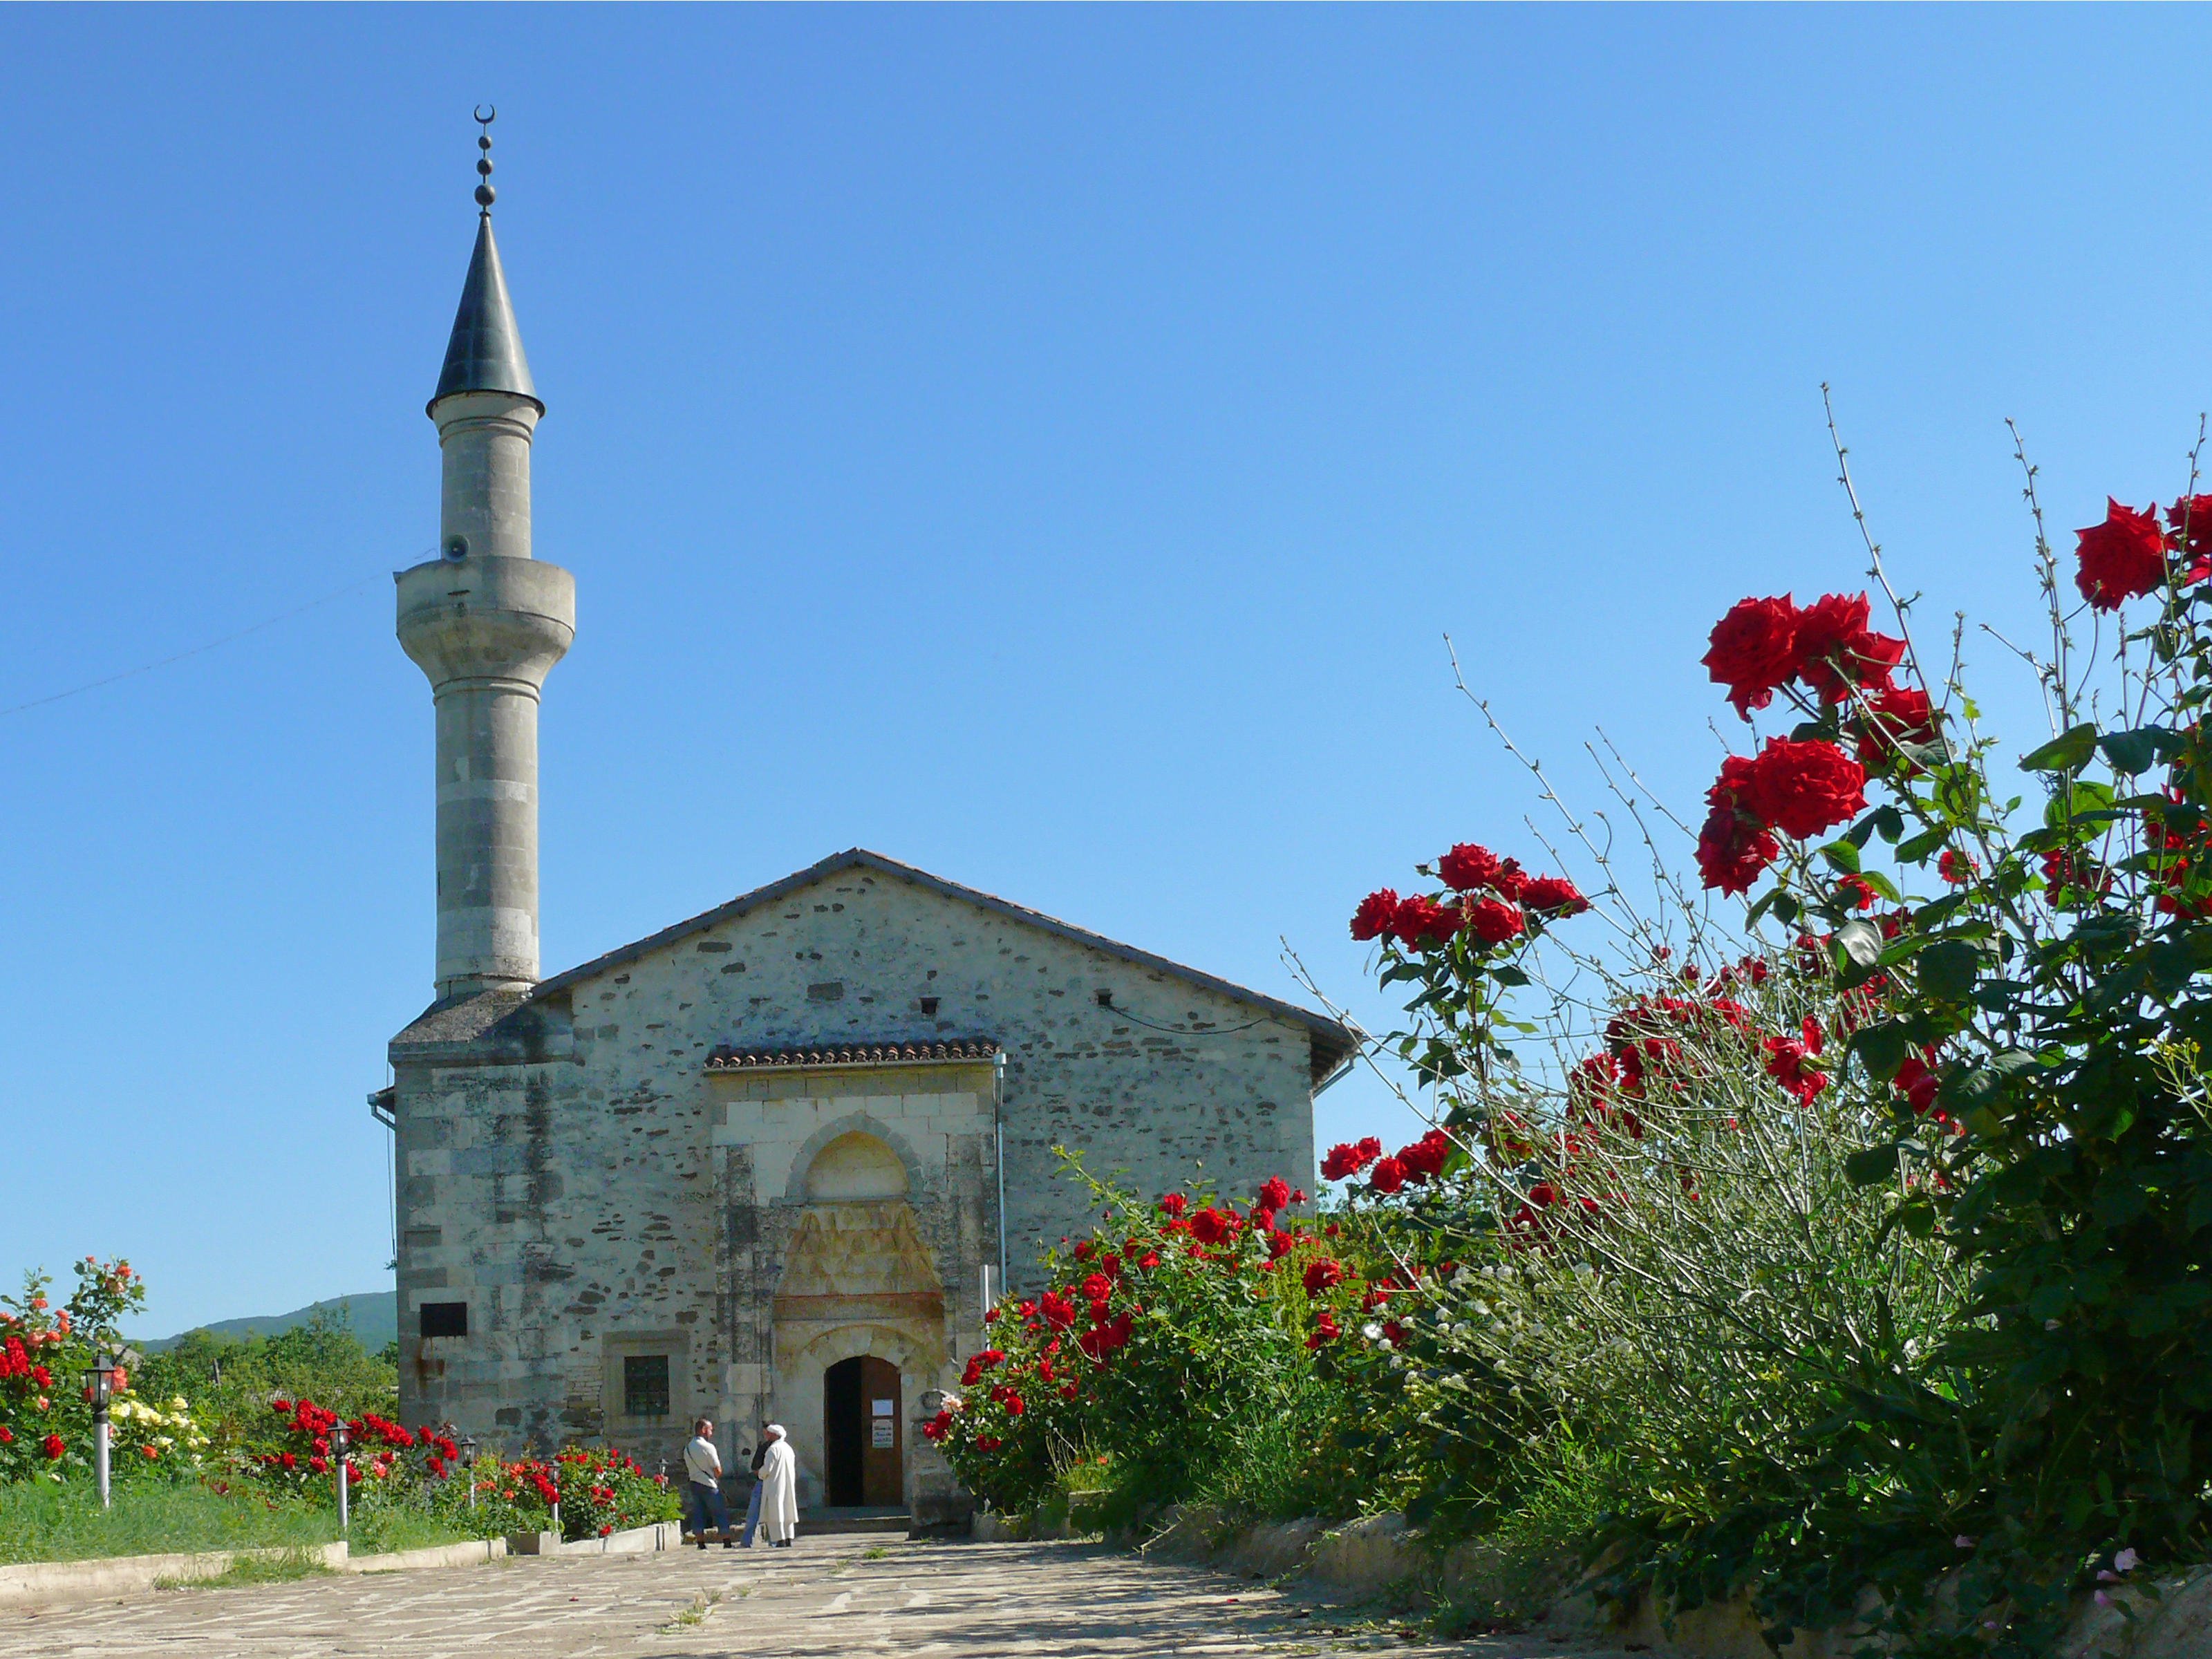 La mosquée de simples briques grises serait la plus vieille mosquée d’Europe de l’Est (Wikimedia)